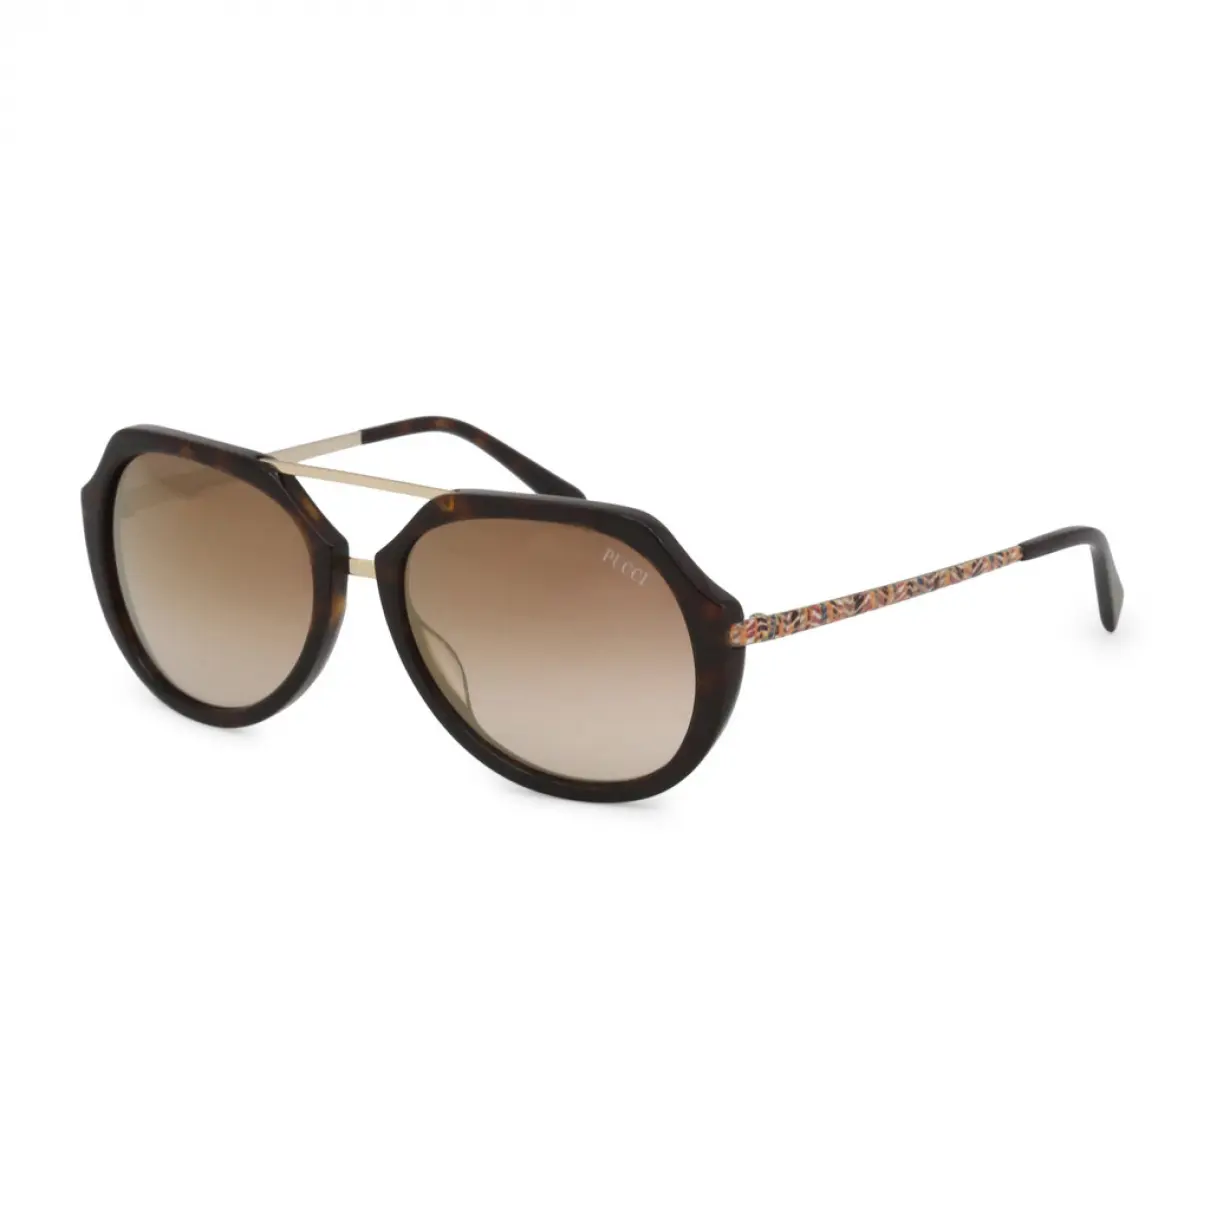 Buy Emilio Pucci Sunglasses online